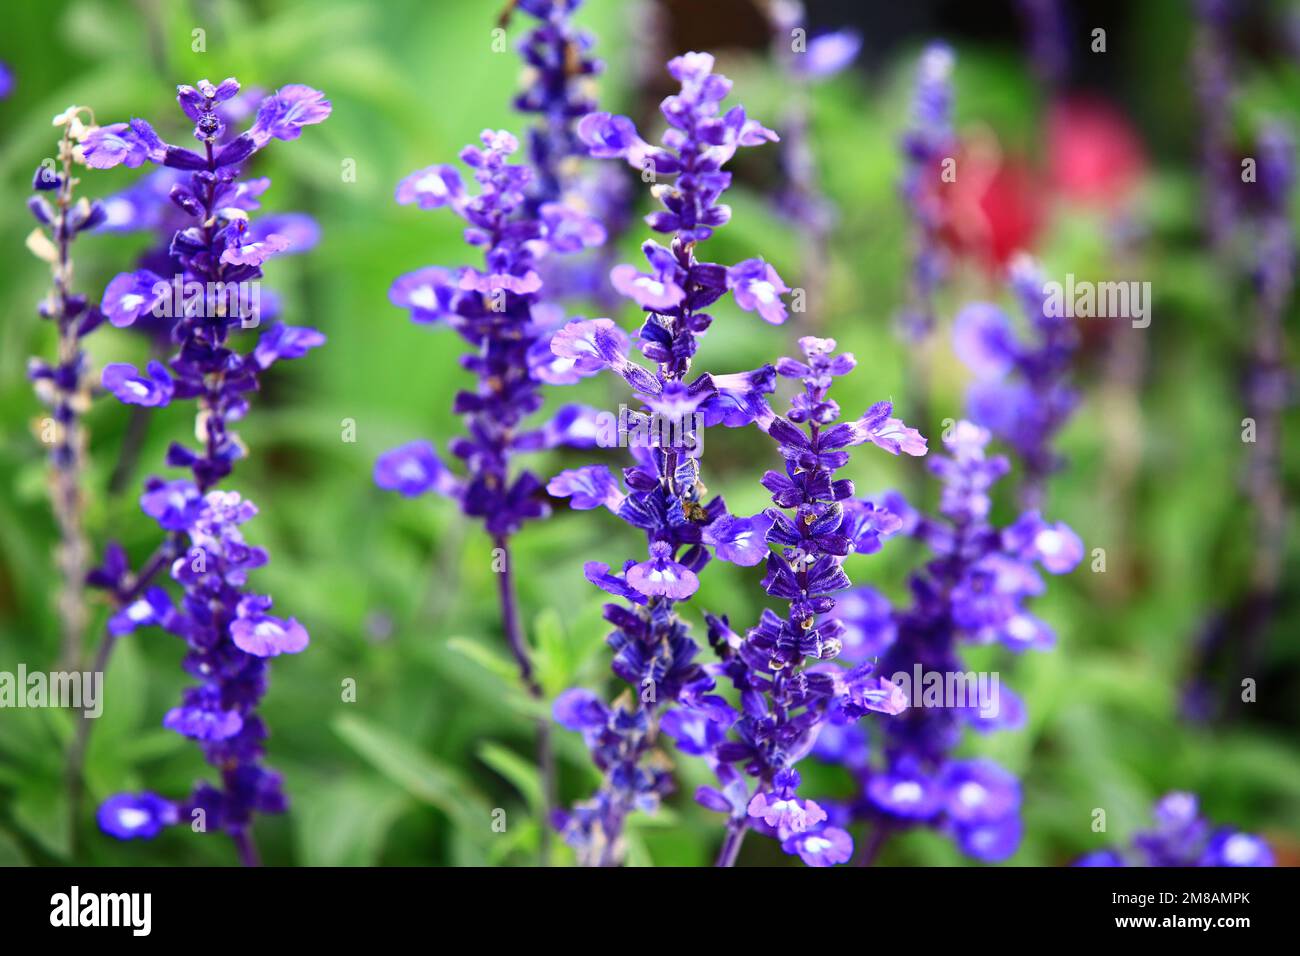 Fioritura Mealy Sage fiori, primo piano di bella viola con fiori blu fiorire in giardino in una giornata di sole Foto Stock